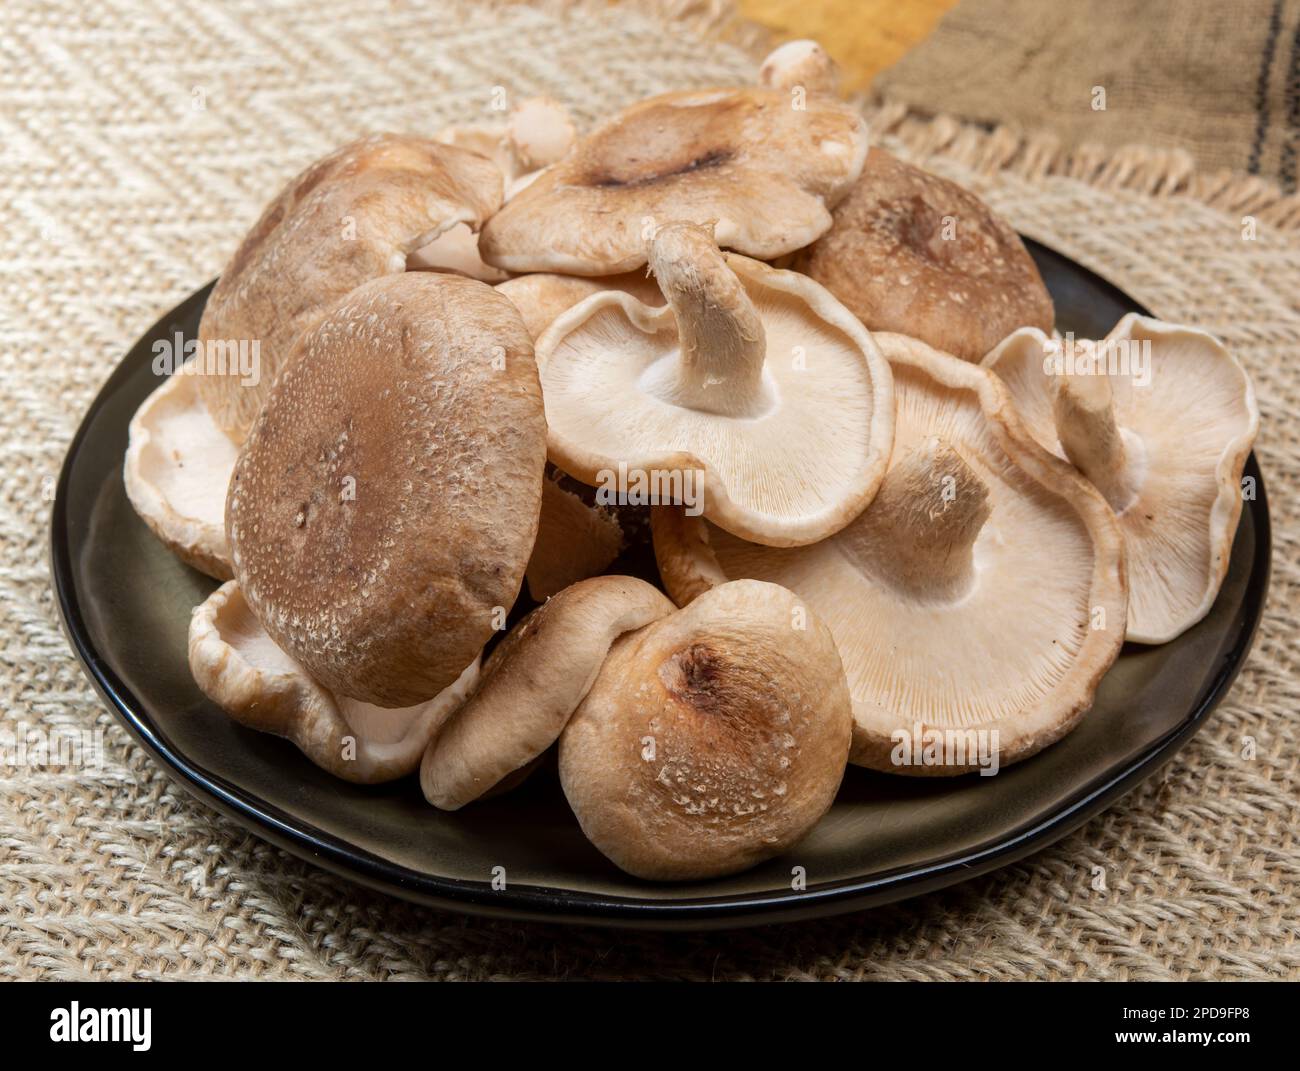 Lentinula edodes brunes fraîches ou shiitake champignons comestibles du Japon prêts à cuire Banque D'Images